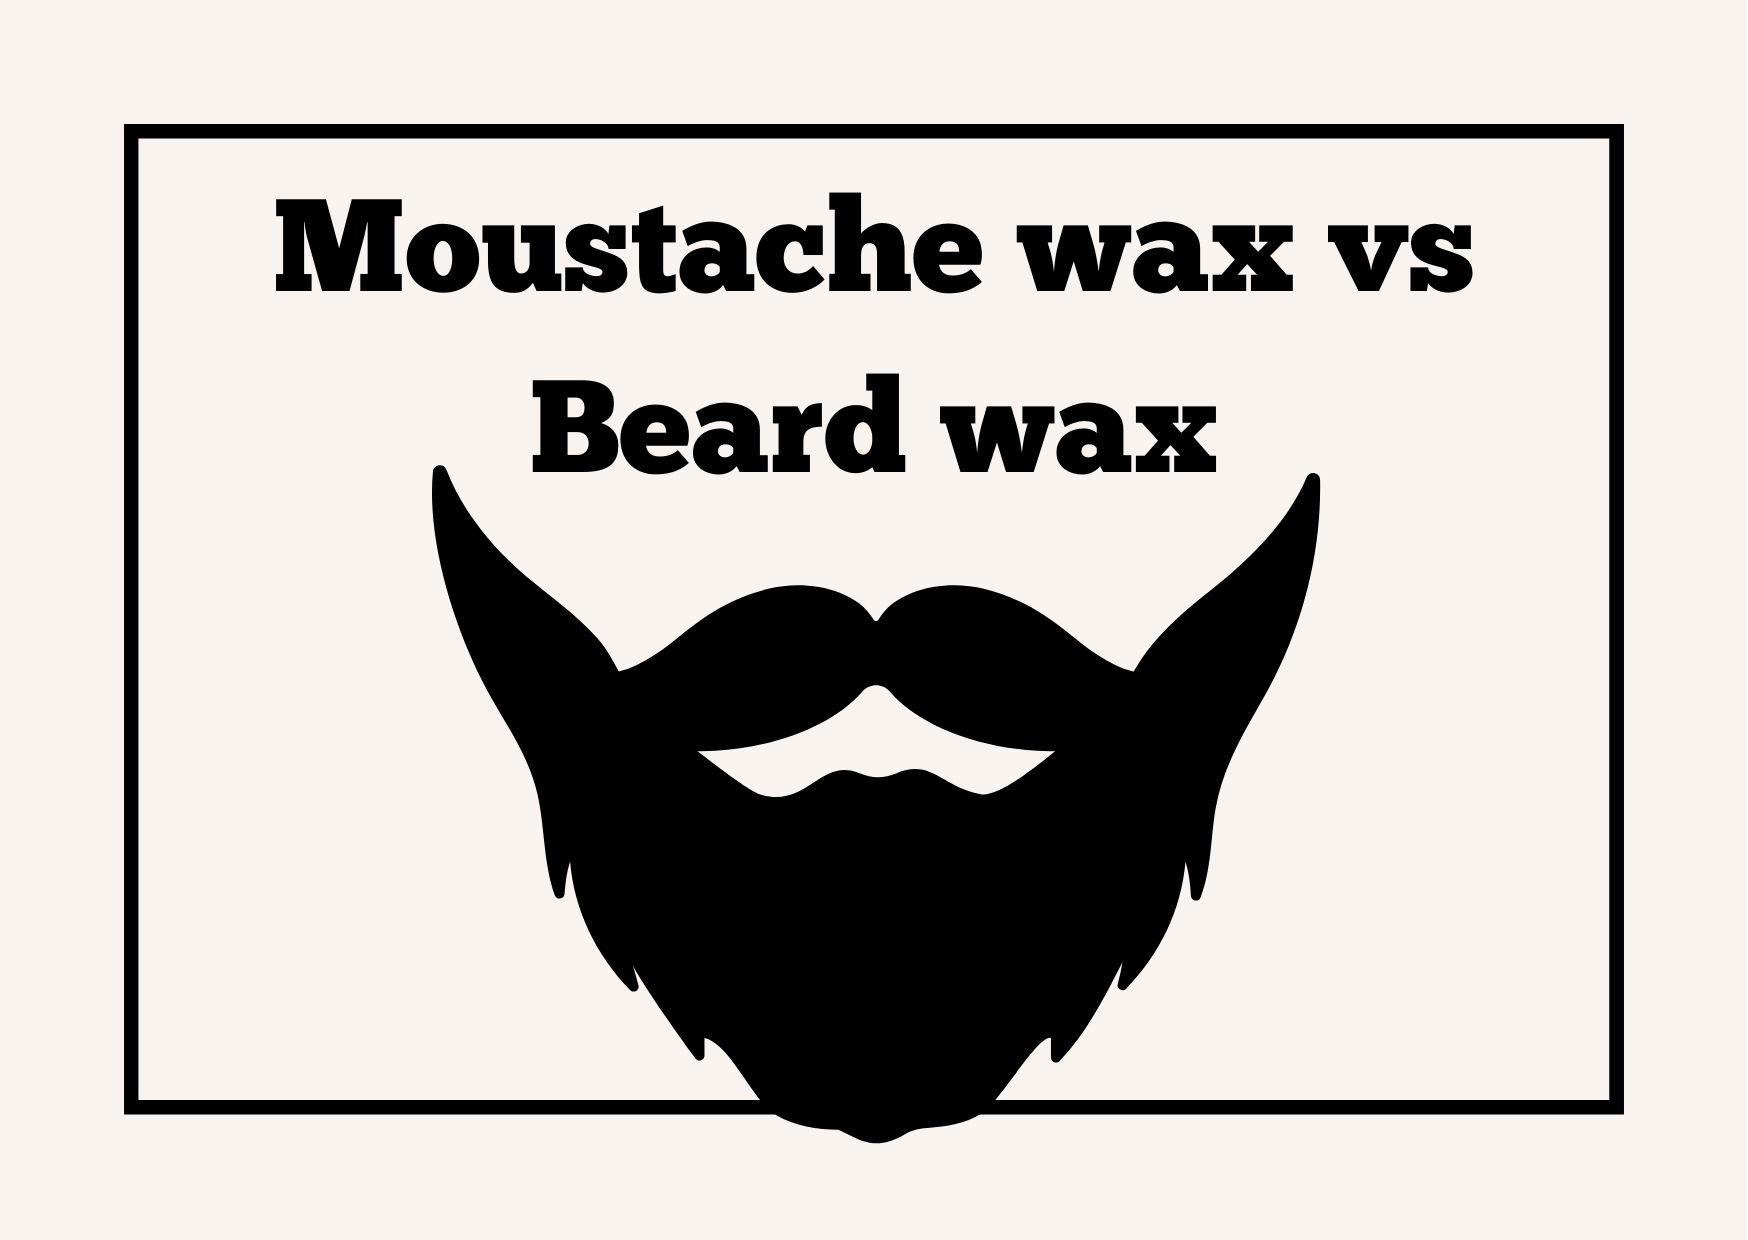 Moustache wax vs Beard wax